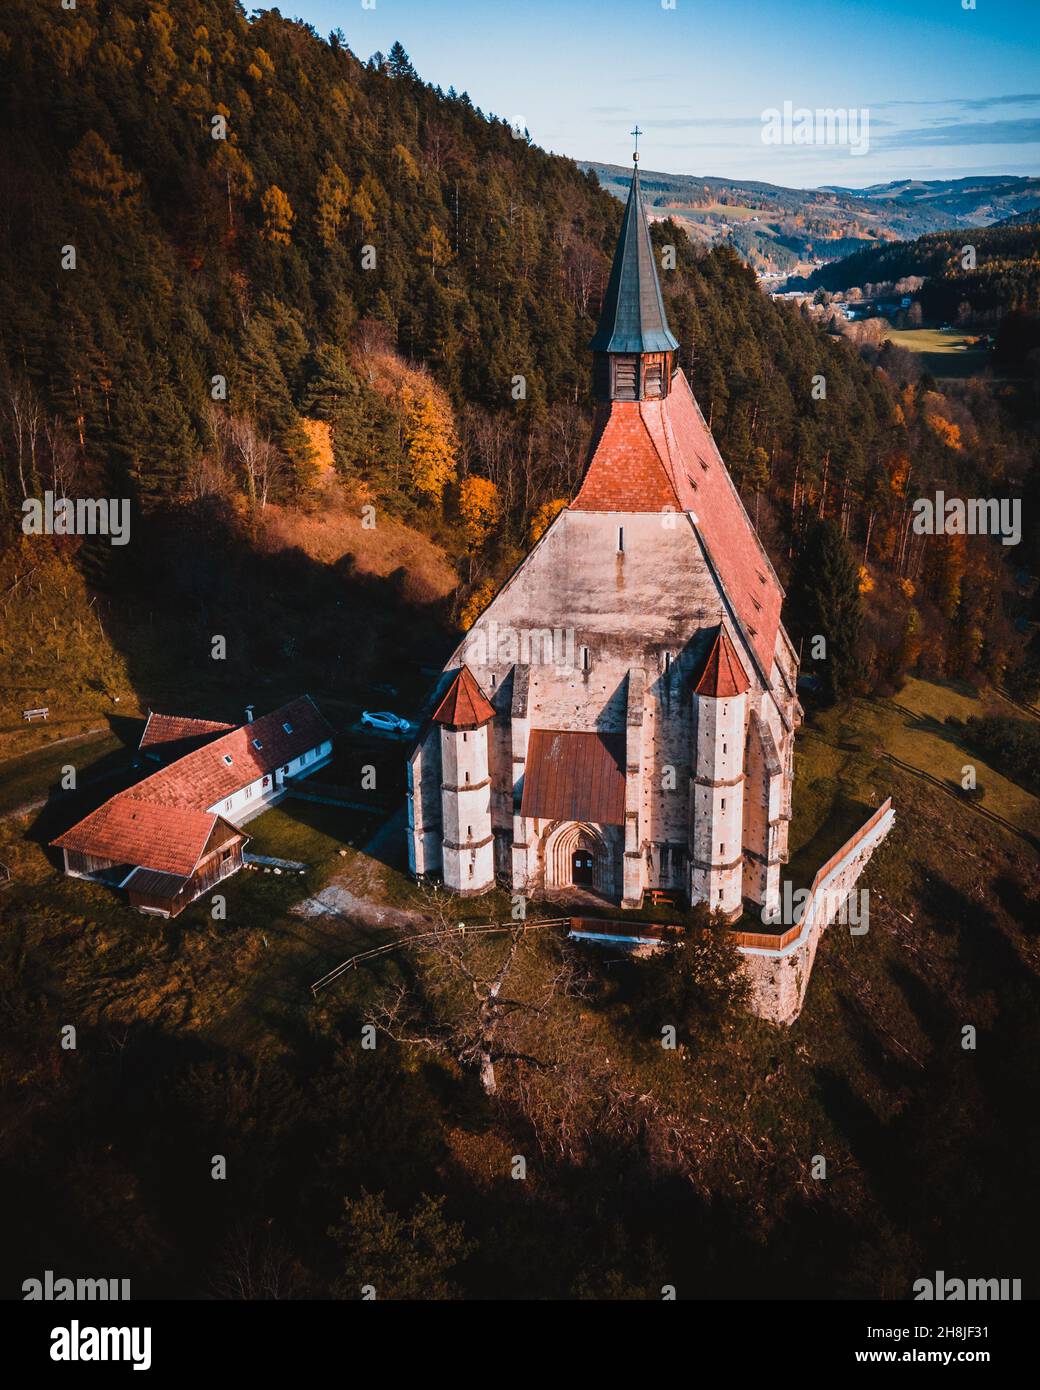 Die Wofgangskirche, eine gotische katholische Kirche im österreichischen Dorf Kirchberg am Wechsel Luftbild Stockfoto